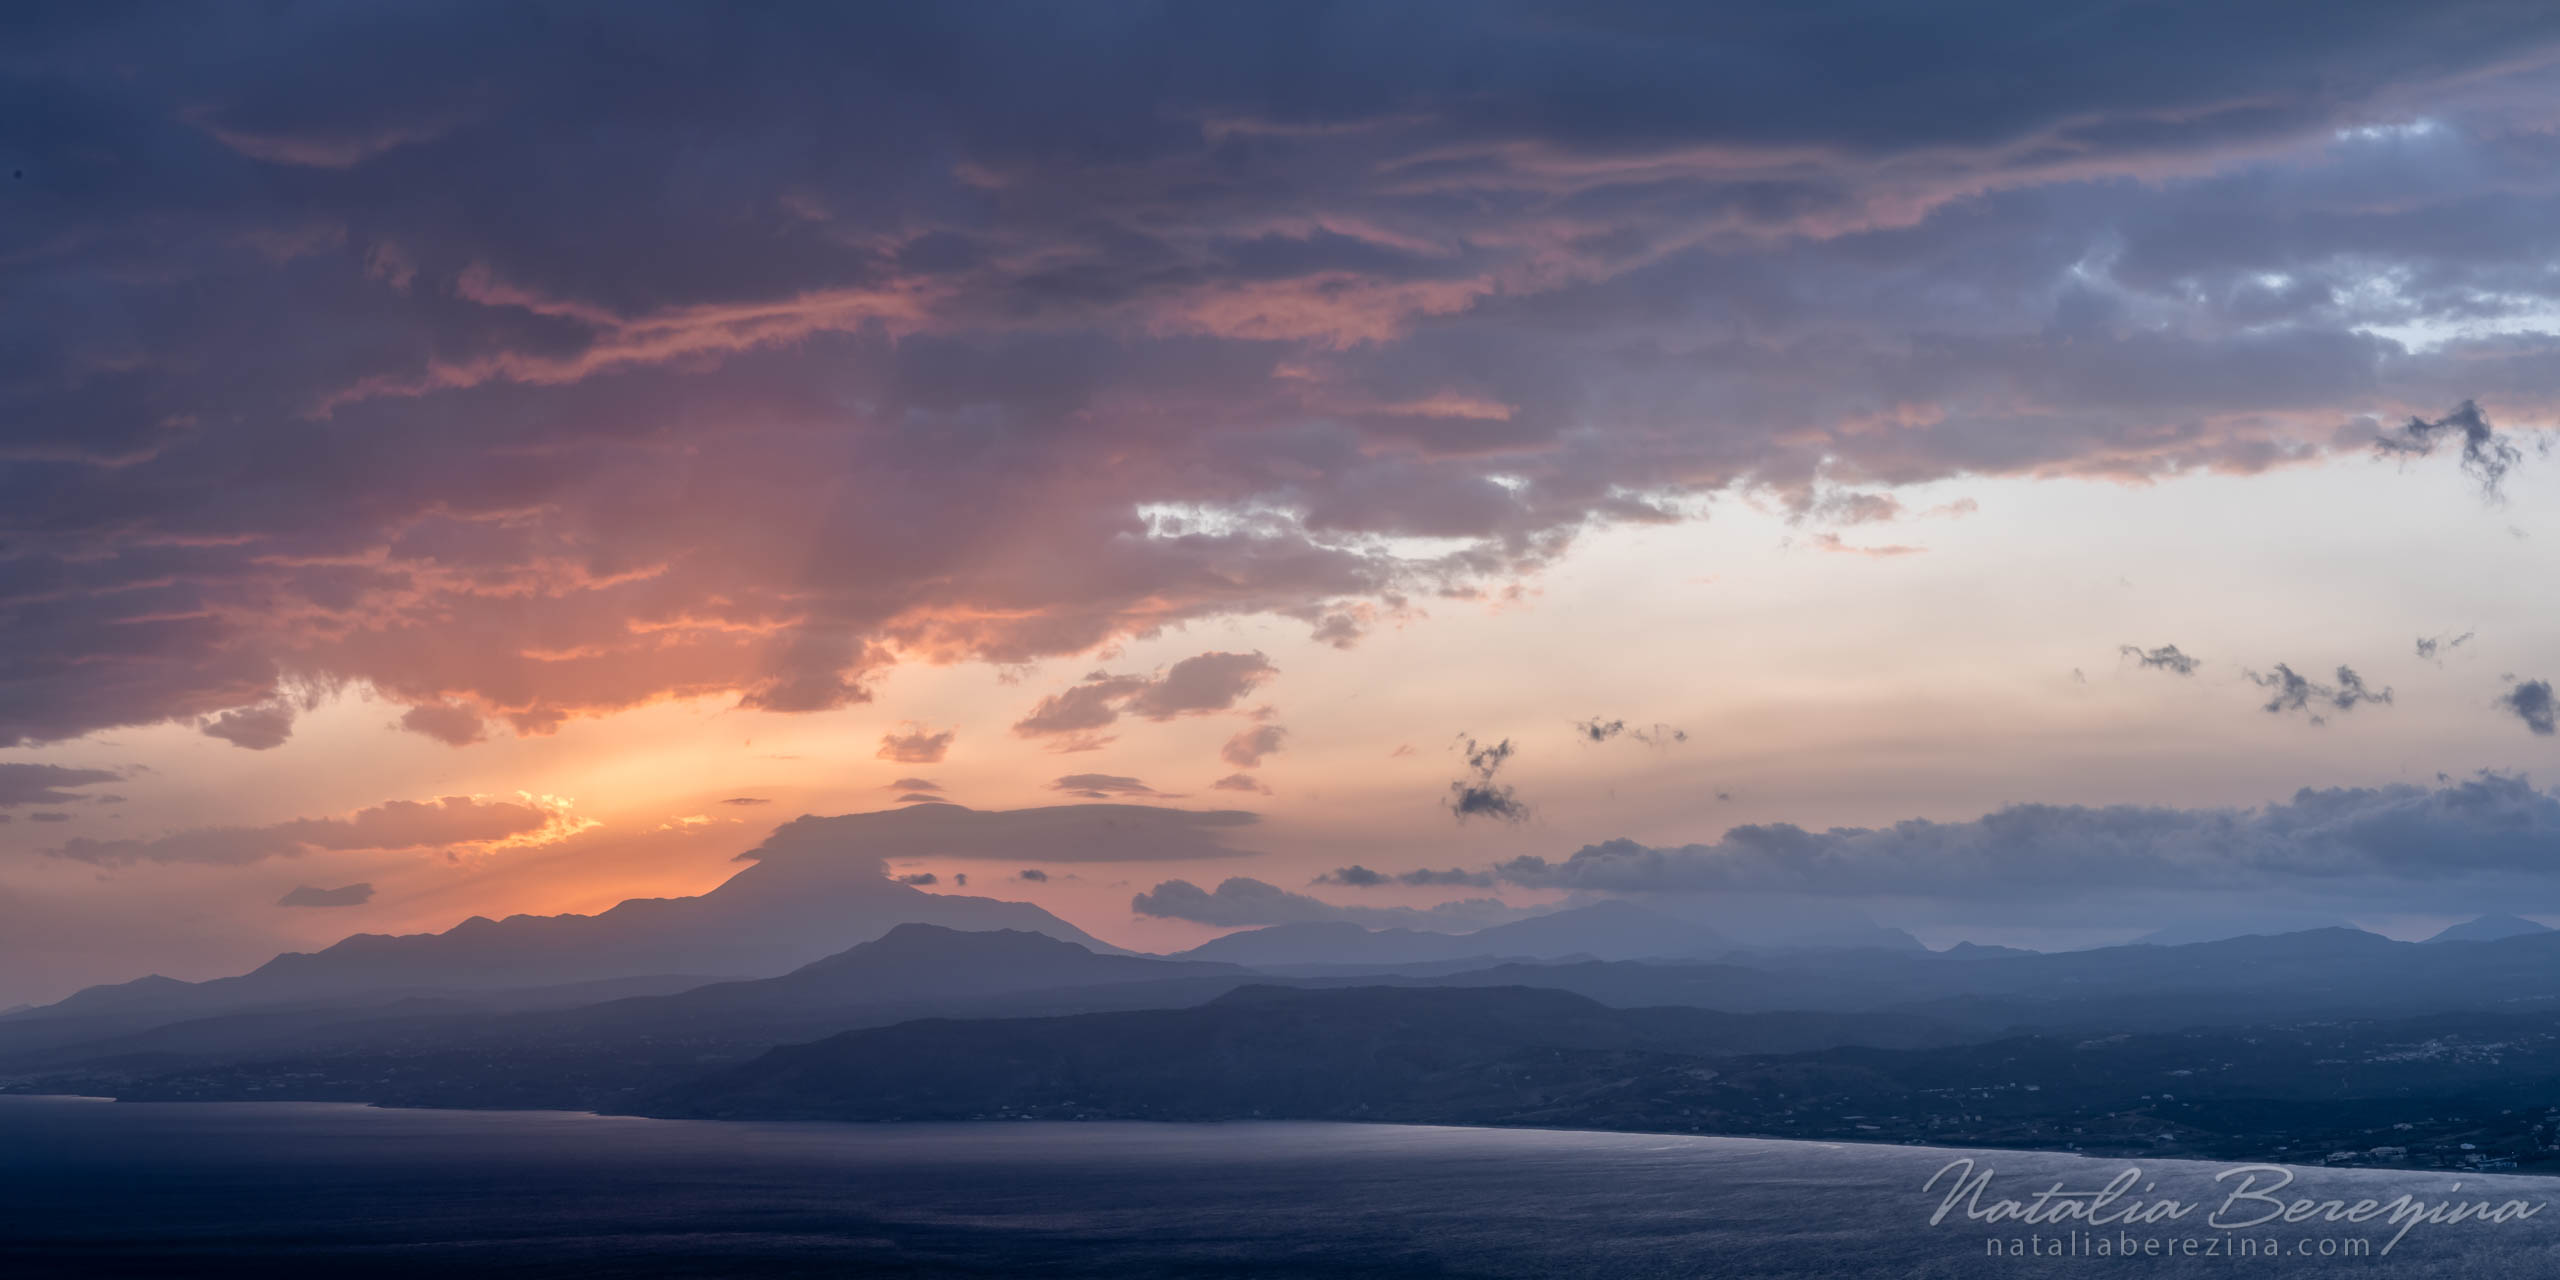 Greece, Crete, landscape, cloud, sea, sunrise, sunlight, skyline, orange, 2x1 CR1-NB7B6A4000-P - Crete, Greece - Natalia Berezina Photography